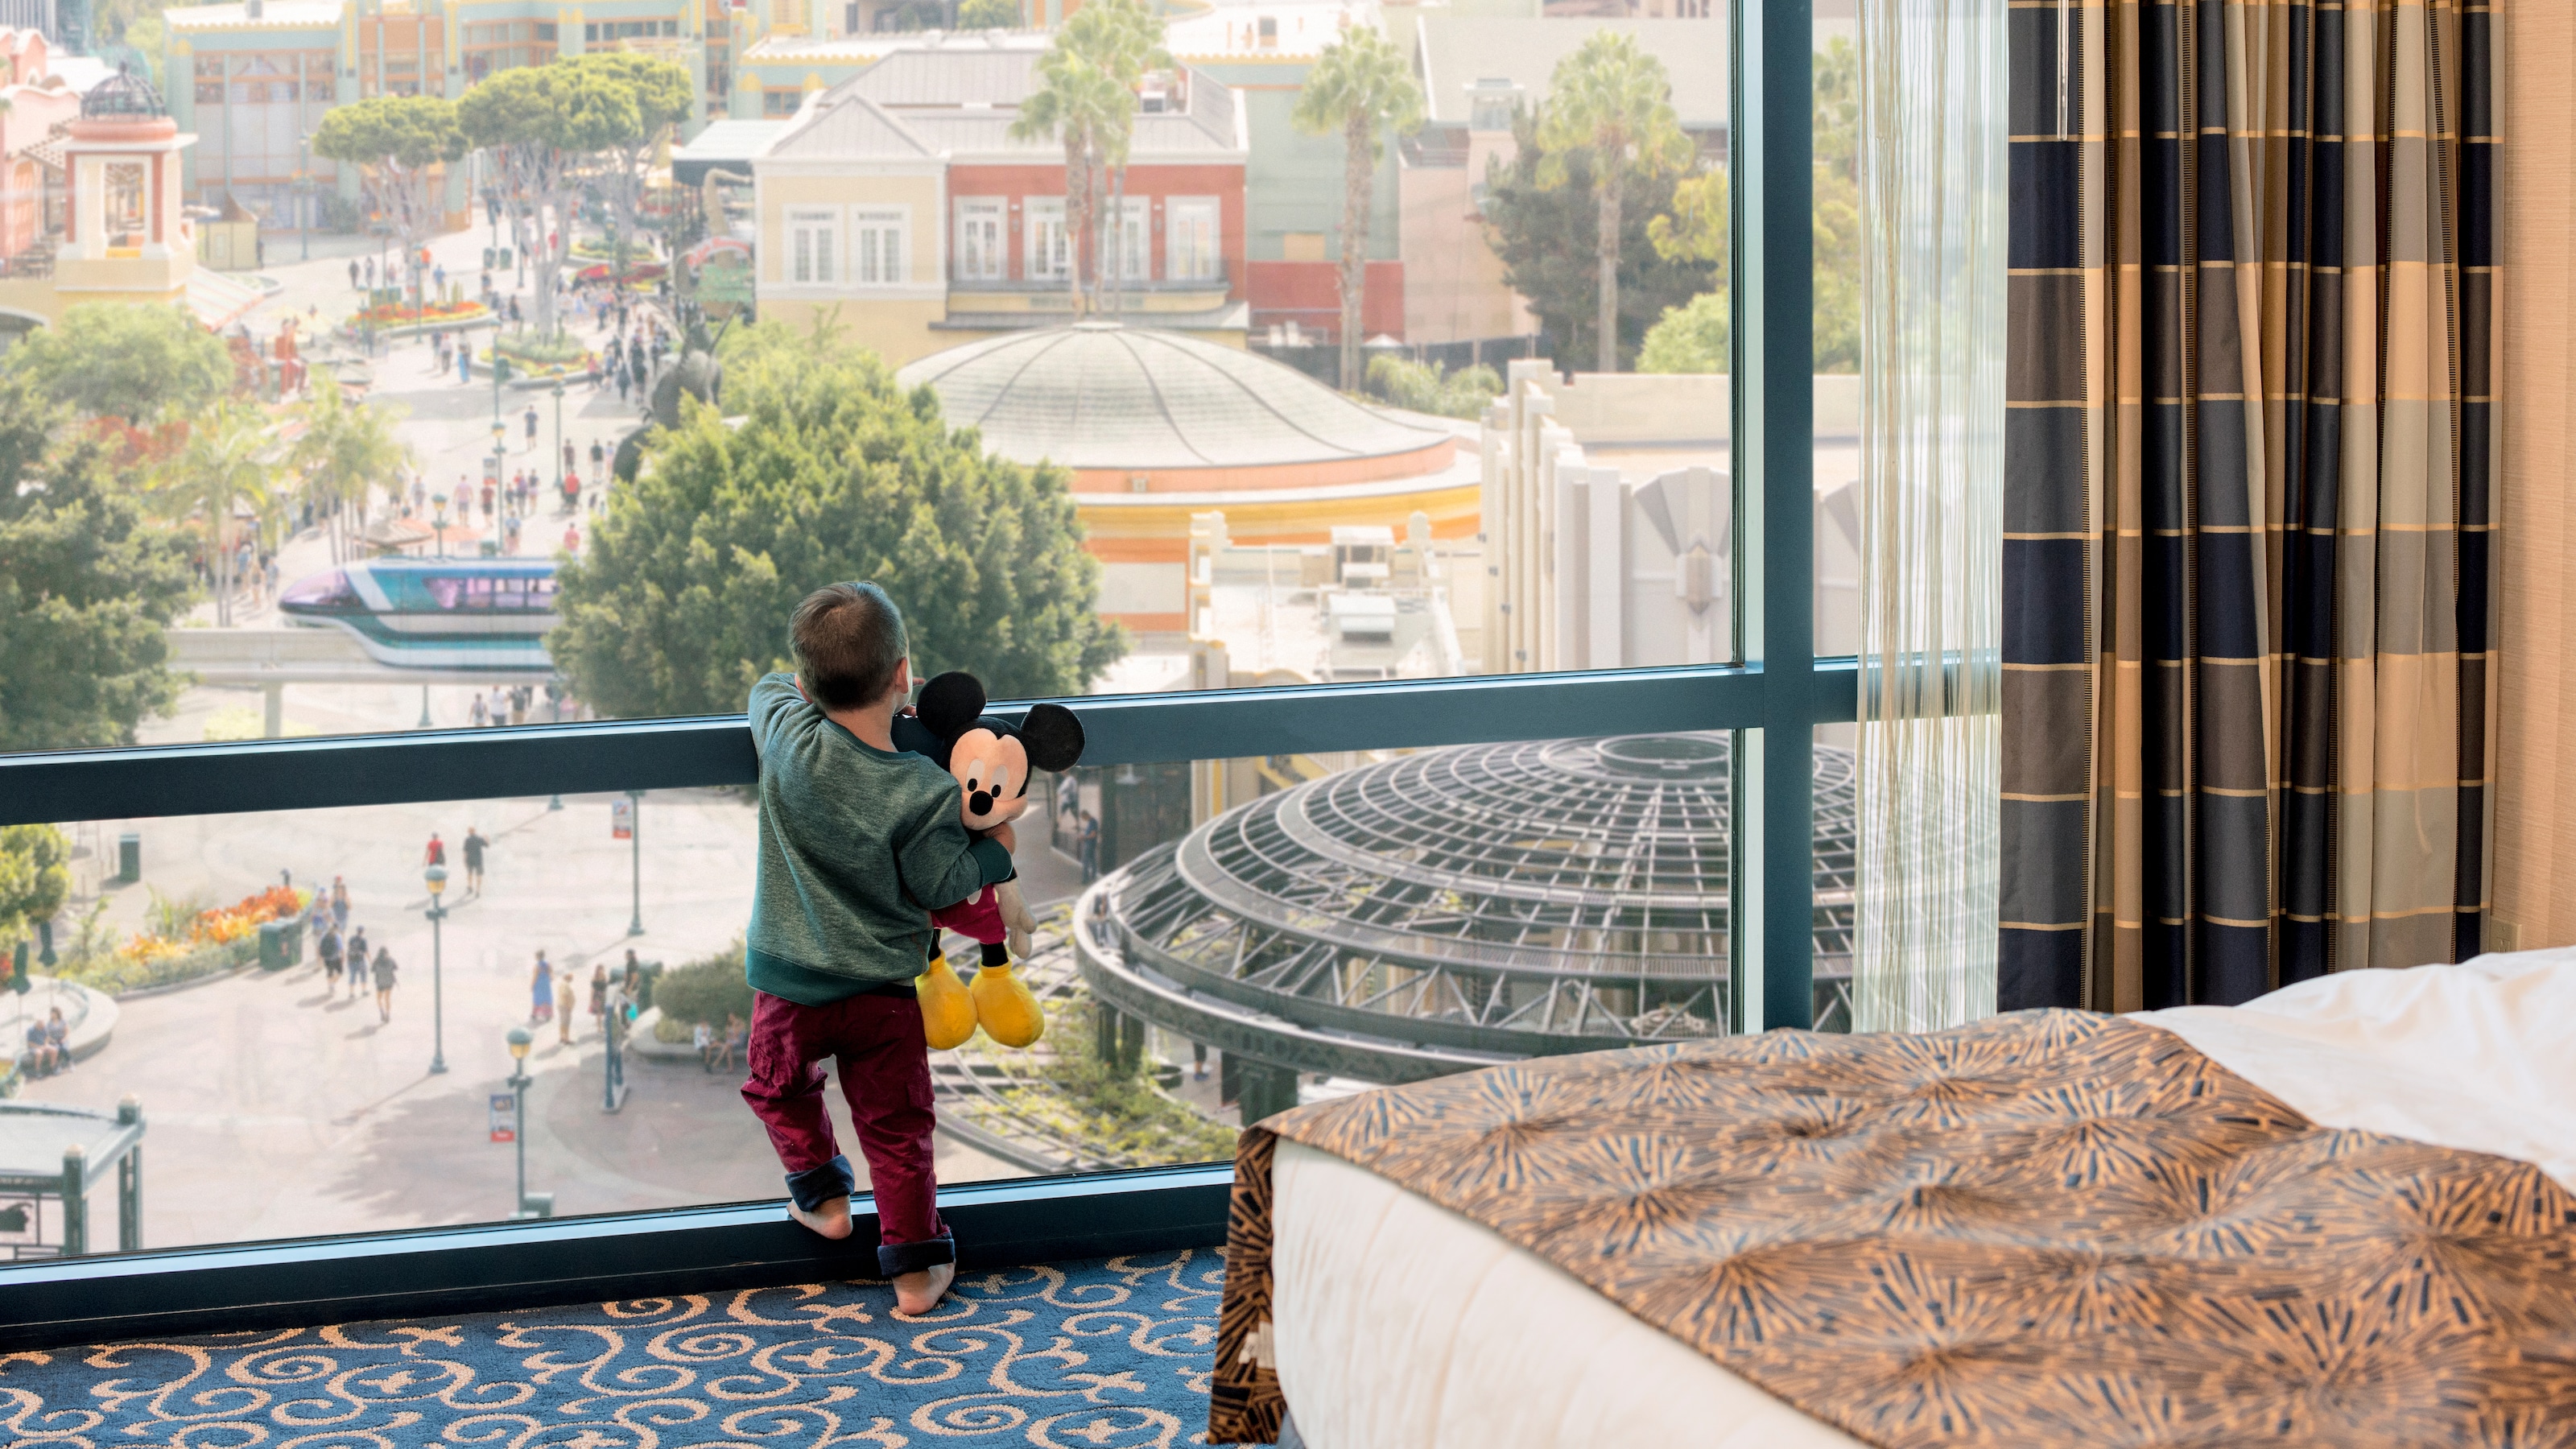 ミッキーマウスの人形を手に持ち、ホテル・ルームの窓からディズニーランド・パークを眺める小さな子ども